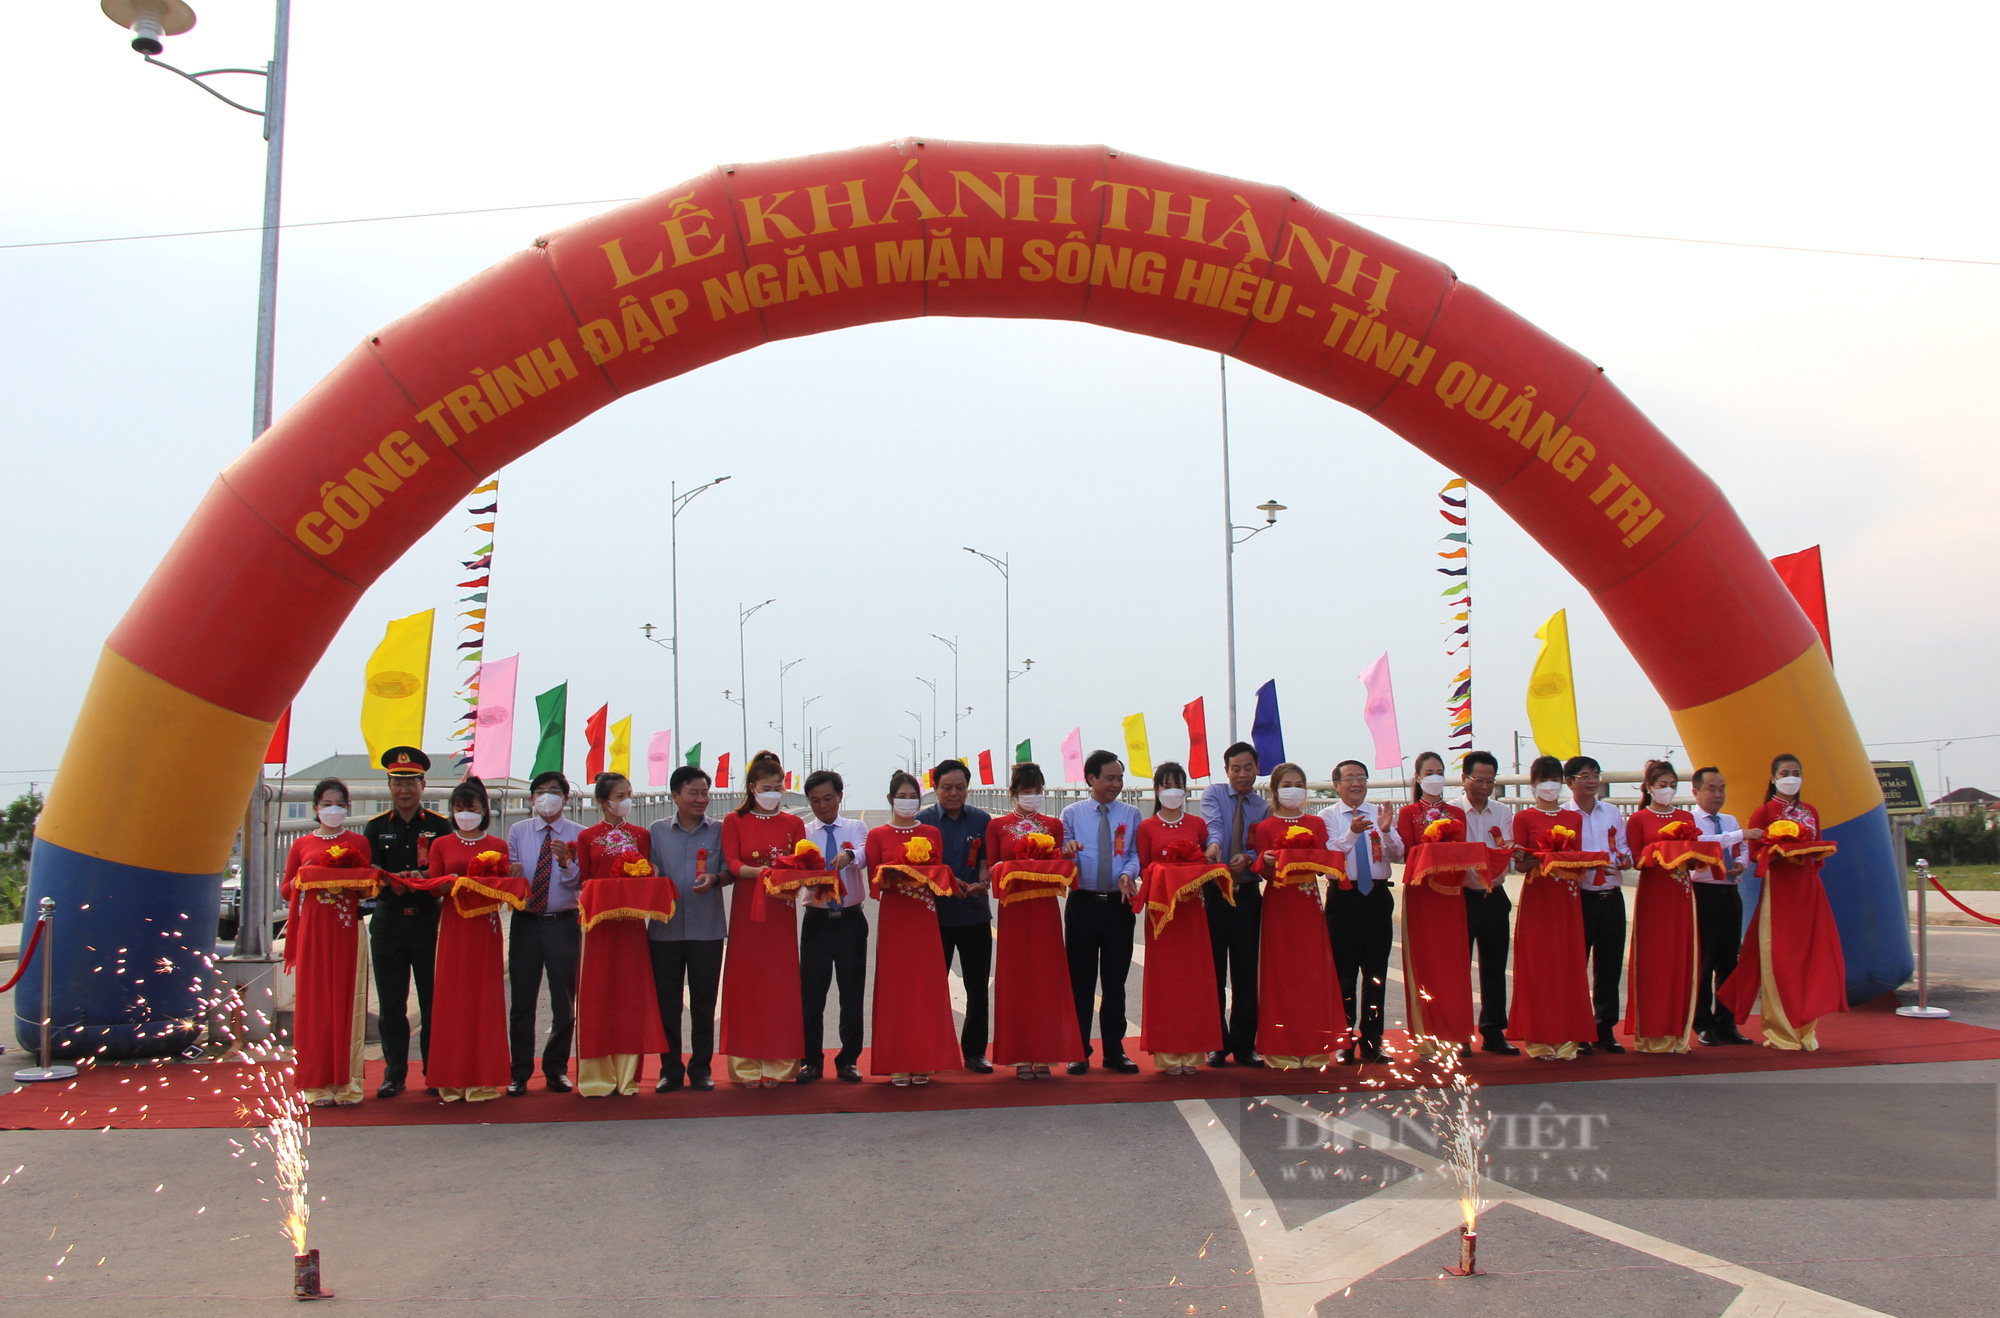 Lấy ý kiến nhân dân để đặt tên cây cầu cao nhất Quảng Trị - Ảnh 2.